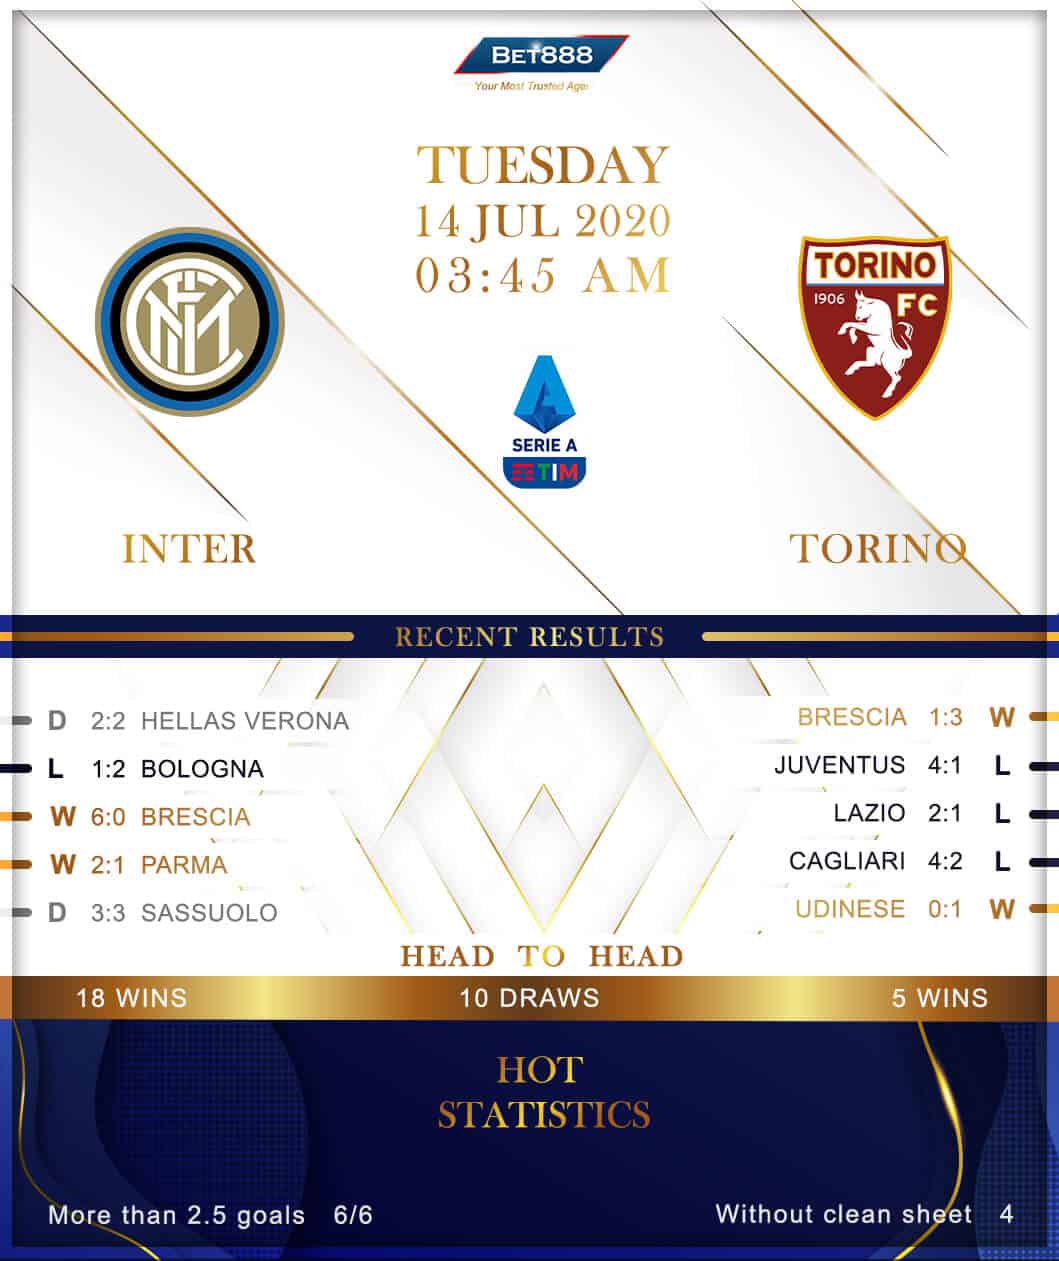 Internazionale vs Torino﻿ 14/07/20